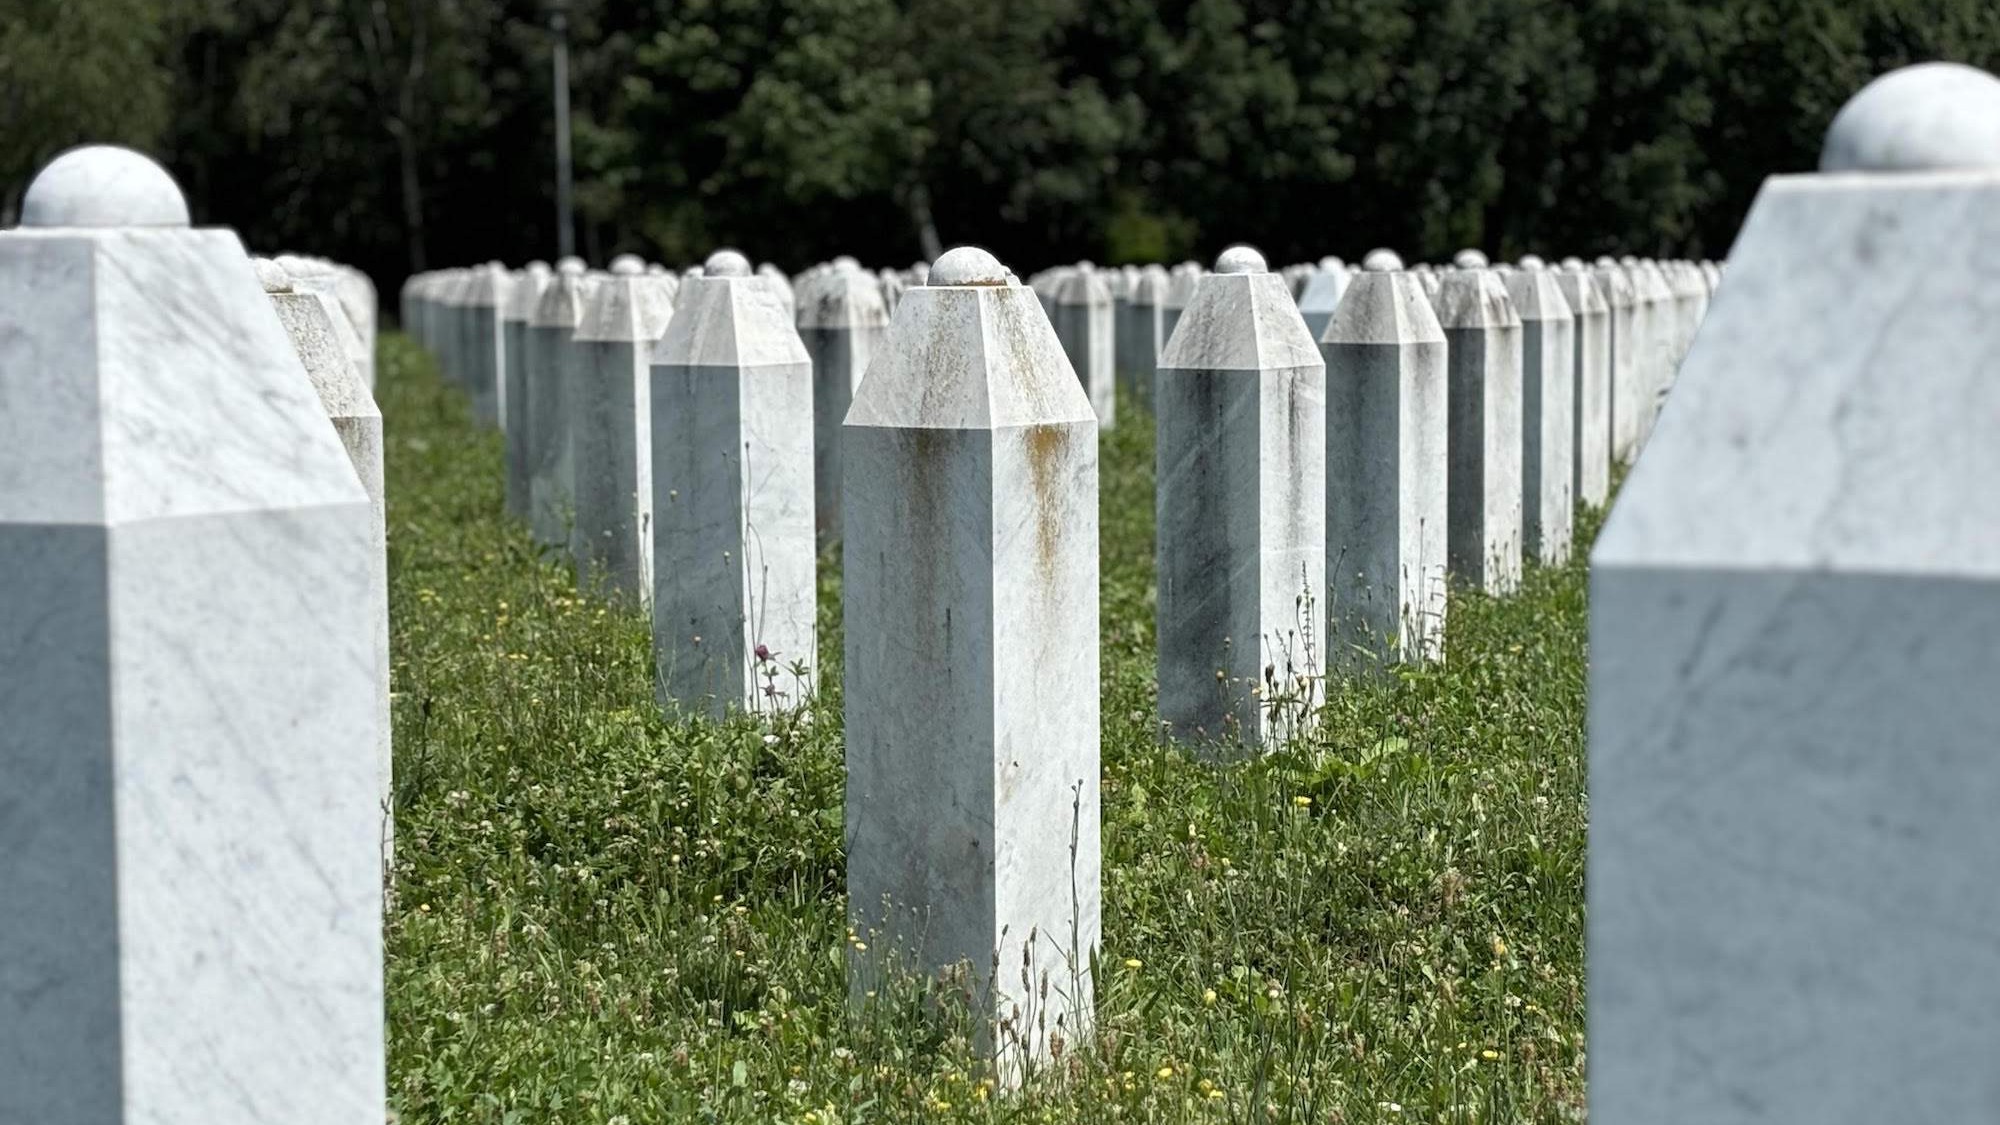 Imena 14 žrtava genocida koje će 11. jula biti ukopane u Potočarima: Konačan smiraj naći će sin uz oca, otac uz sina